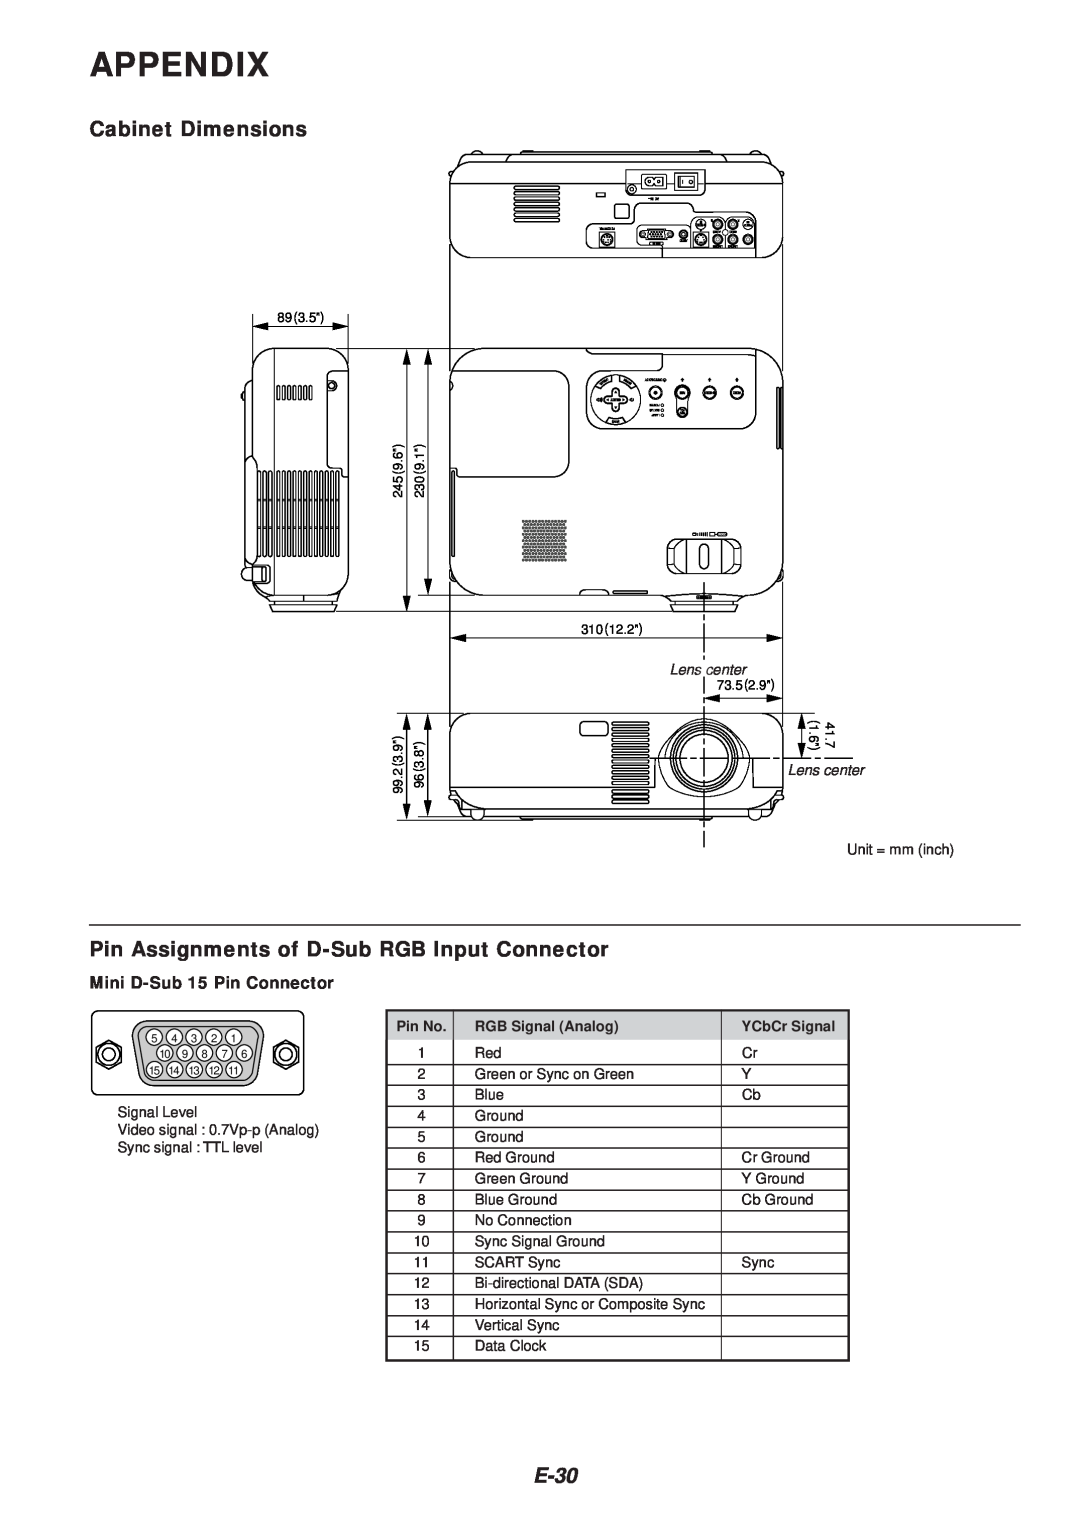 NEC VT46 Appendix, Cabinet Dimensions, Pin Assignments of D-SubRGB Input Connector, E-30, Mini D-Sub15 Pin Connector 